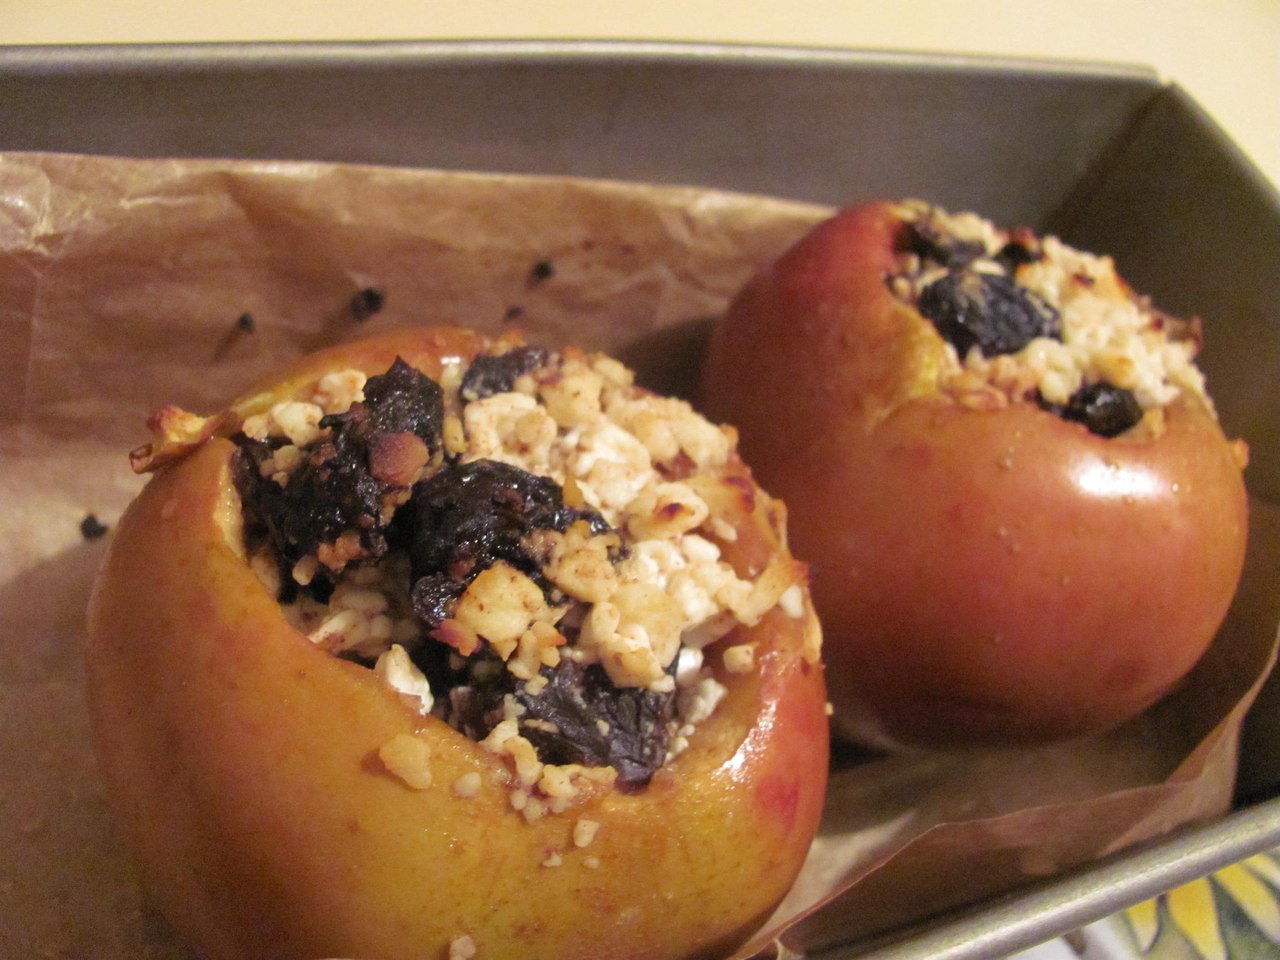 Рецепт запеченные яблоки с творогом в духовке рецепт с фото